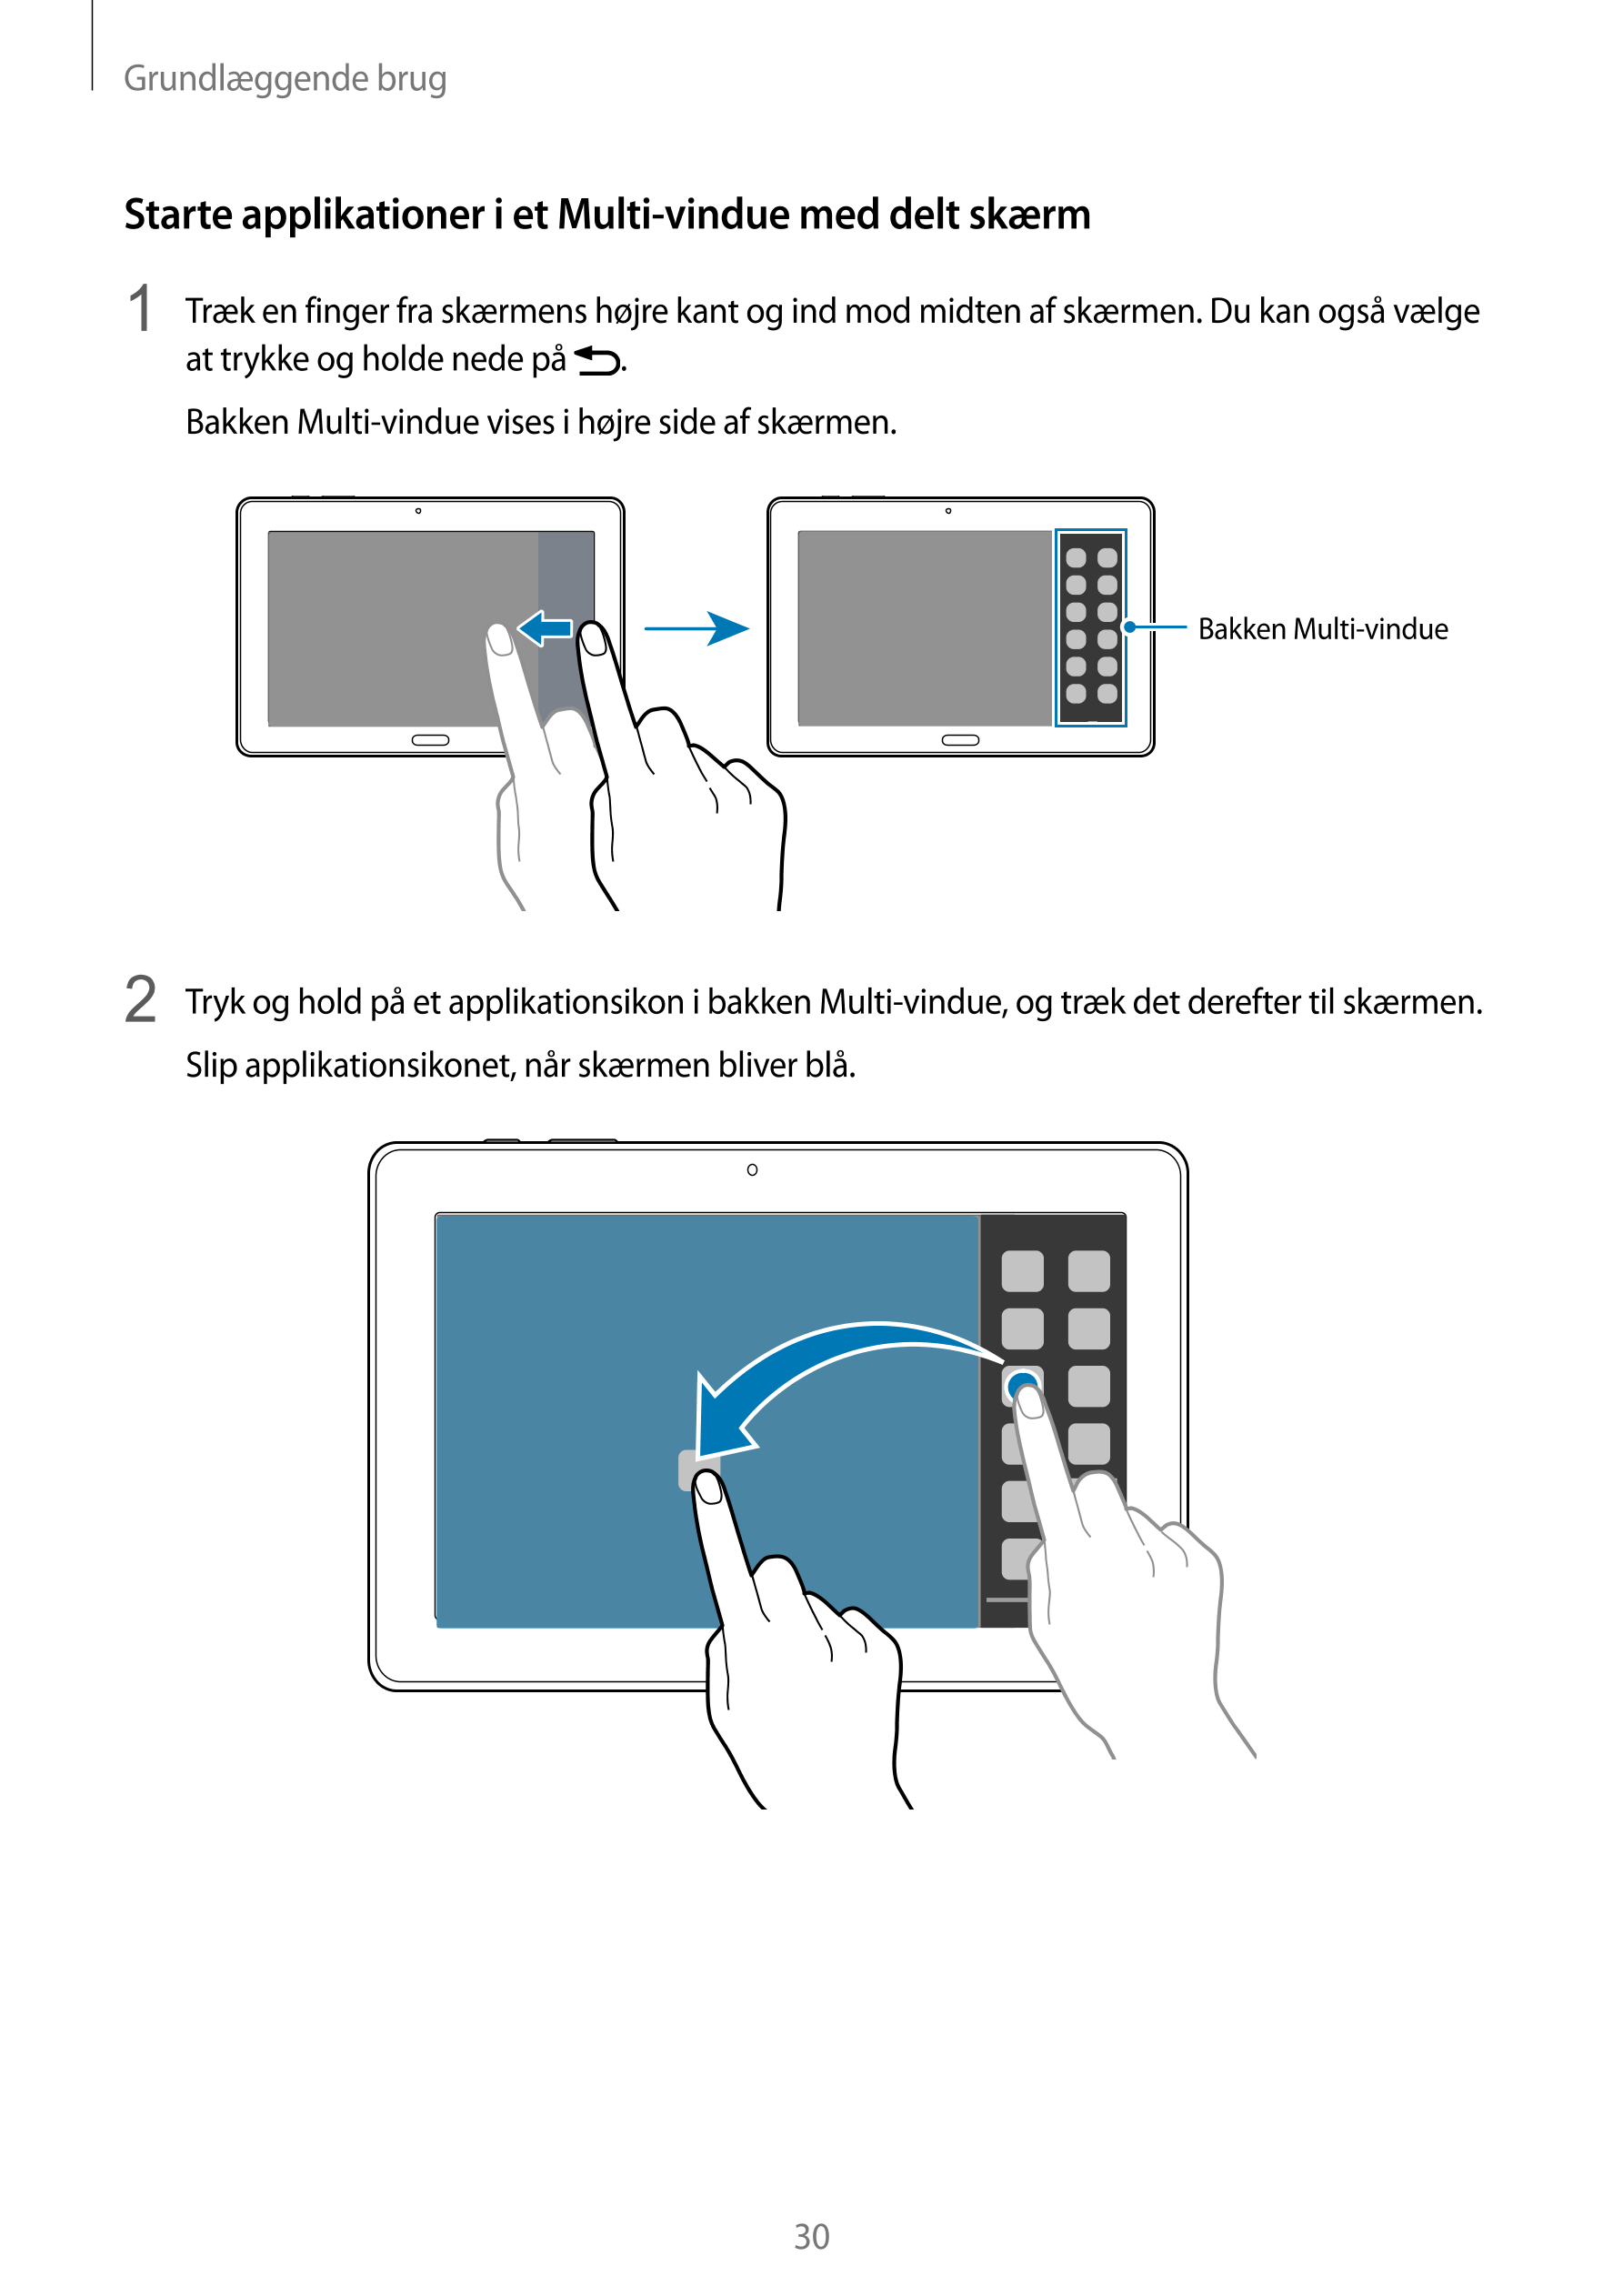 Grundlæggende brug
Starte applikationer i et Multi-vindue med delt skærm
1  Træk en finger fra skærmens højre kant og ind mod mi